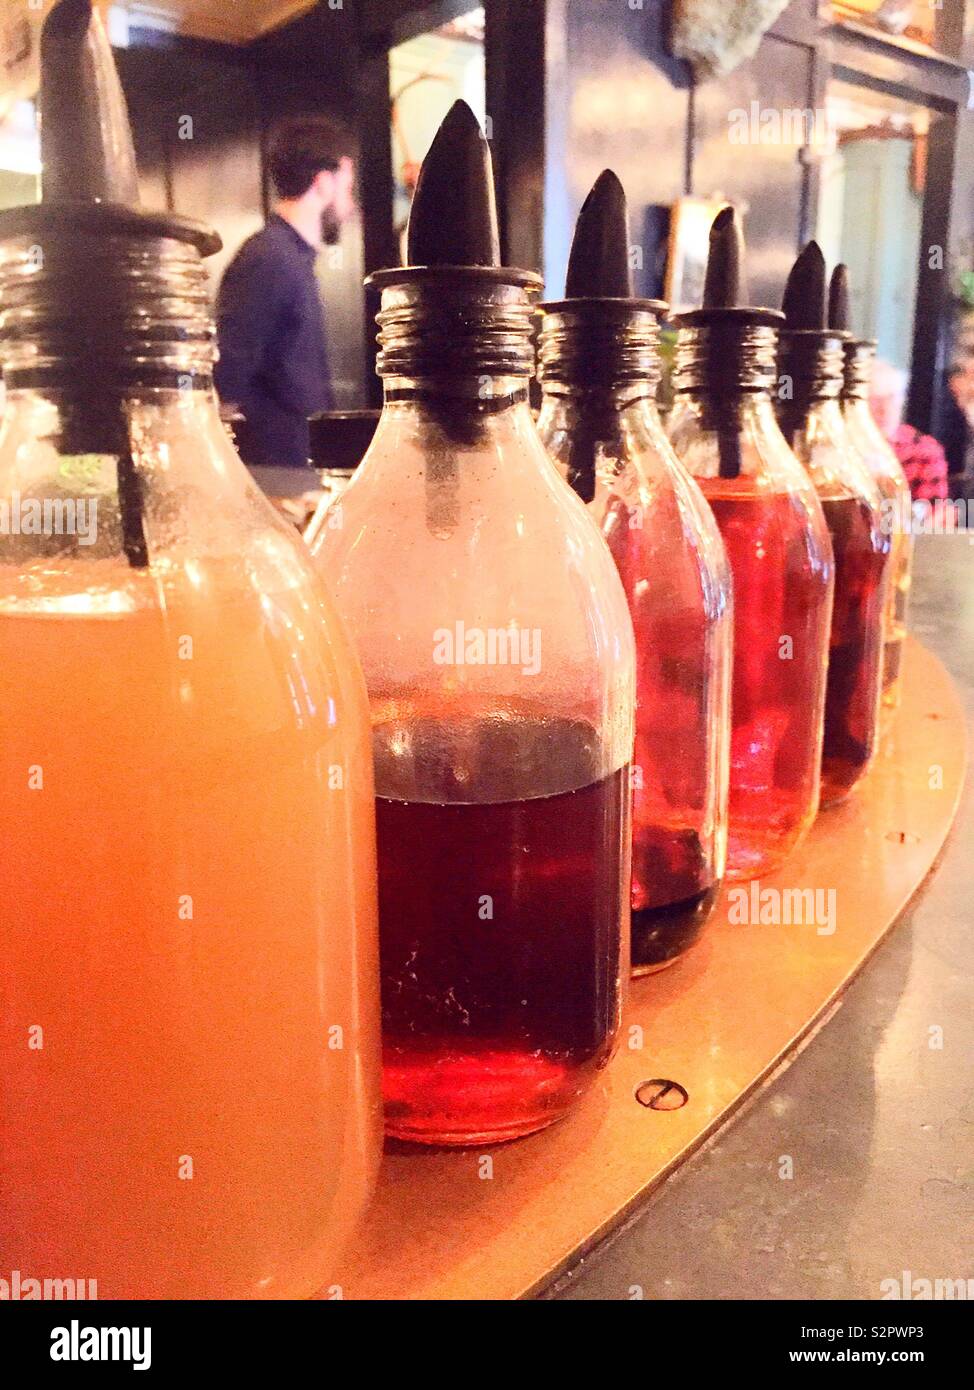 Les bouteilles de sirop aromatisé alignés sur un dessus de barre dans un restaurant, USA Banque D'Images